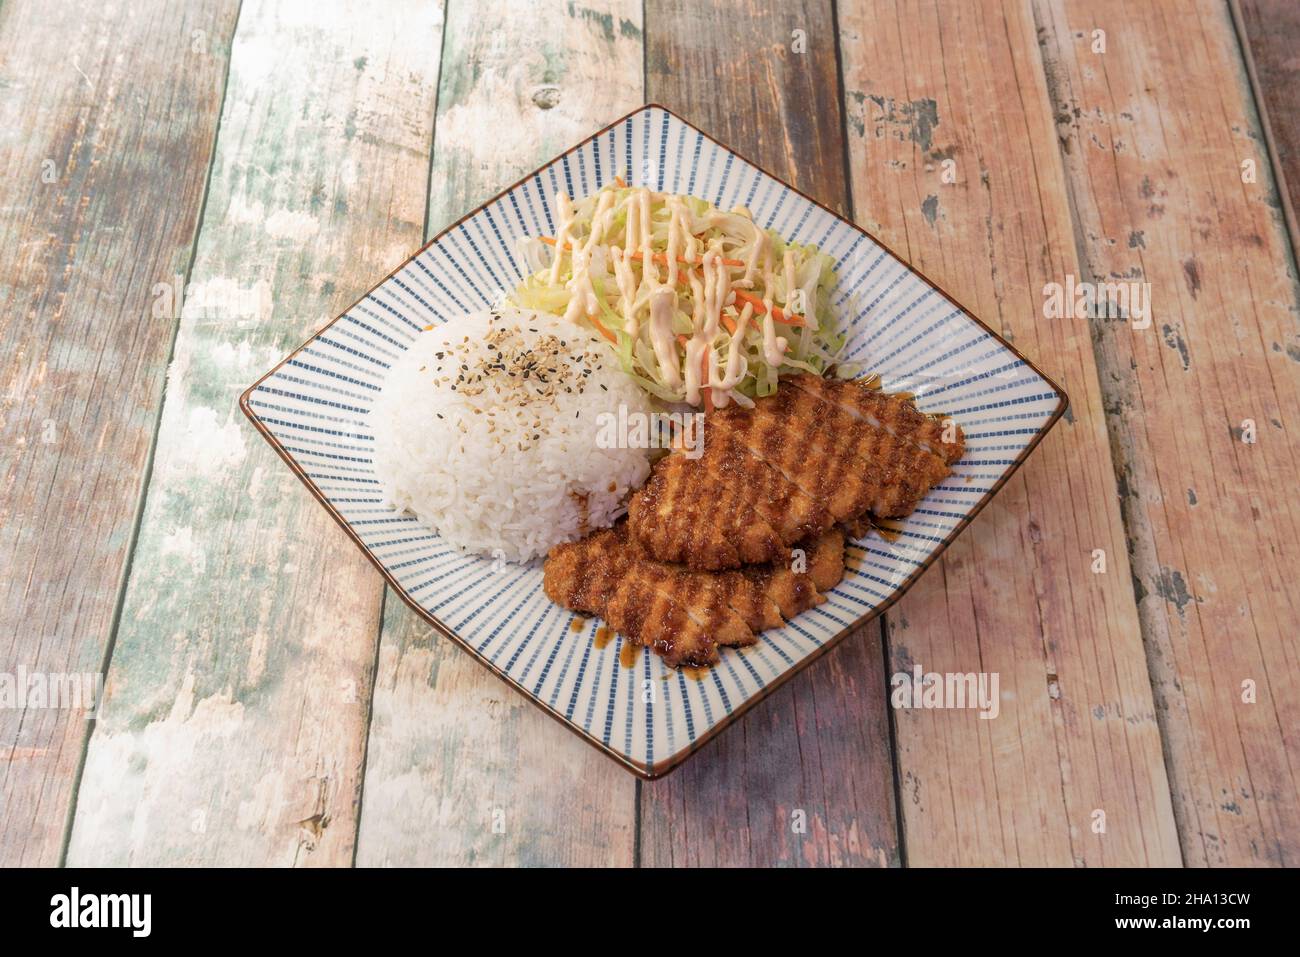 Receta asiática de solomillo de cerdo crujiente con salsa yakitori, ensalada de verduras y arroz blanco con semillas de sésamo y amapola en un platon d Banque D'Images